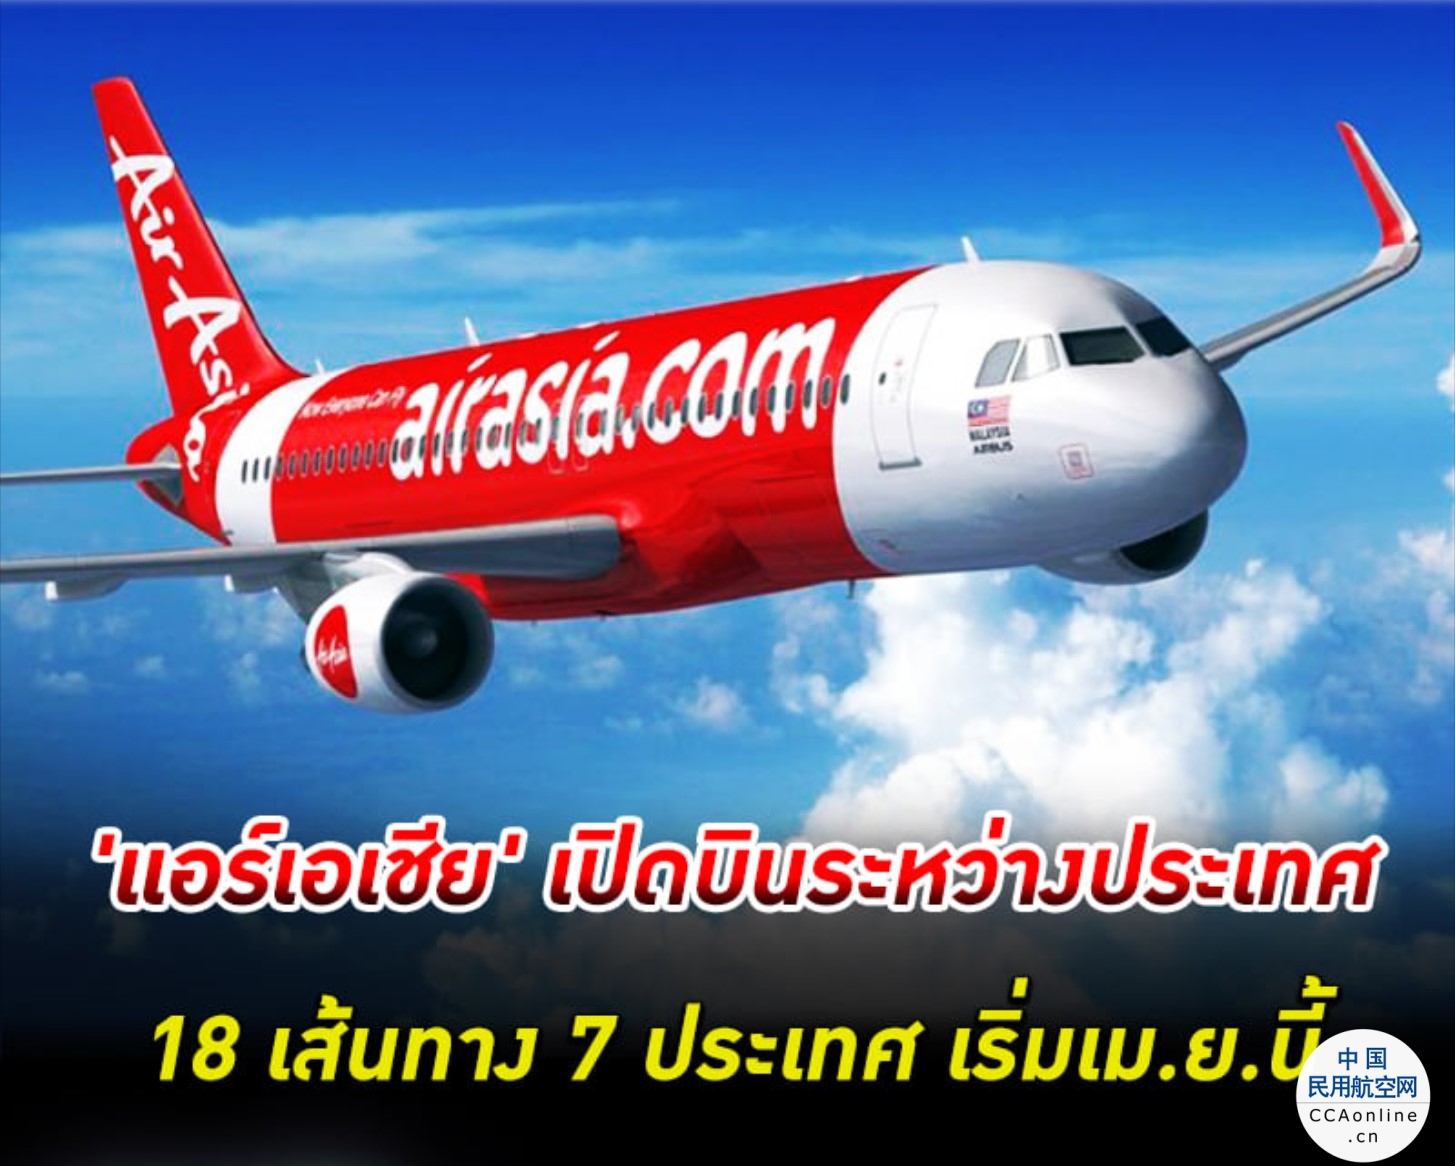 泰国亚航将于4月起复飞7国18条国际航线